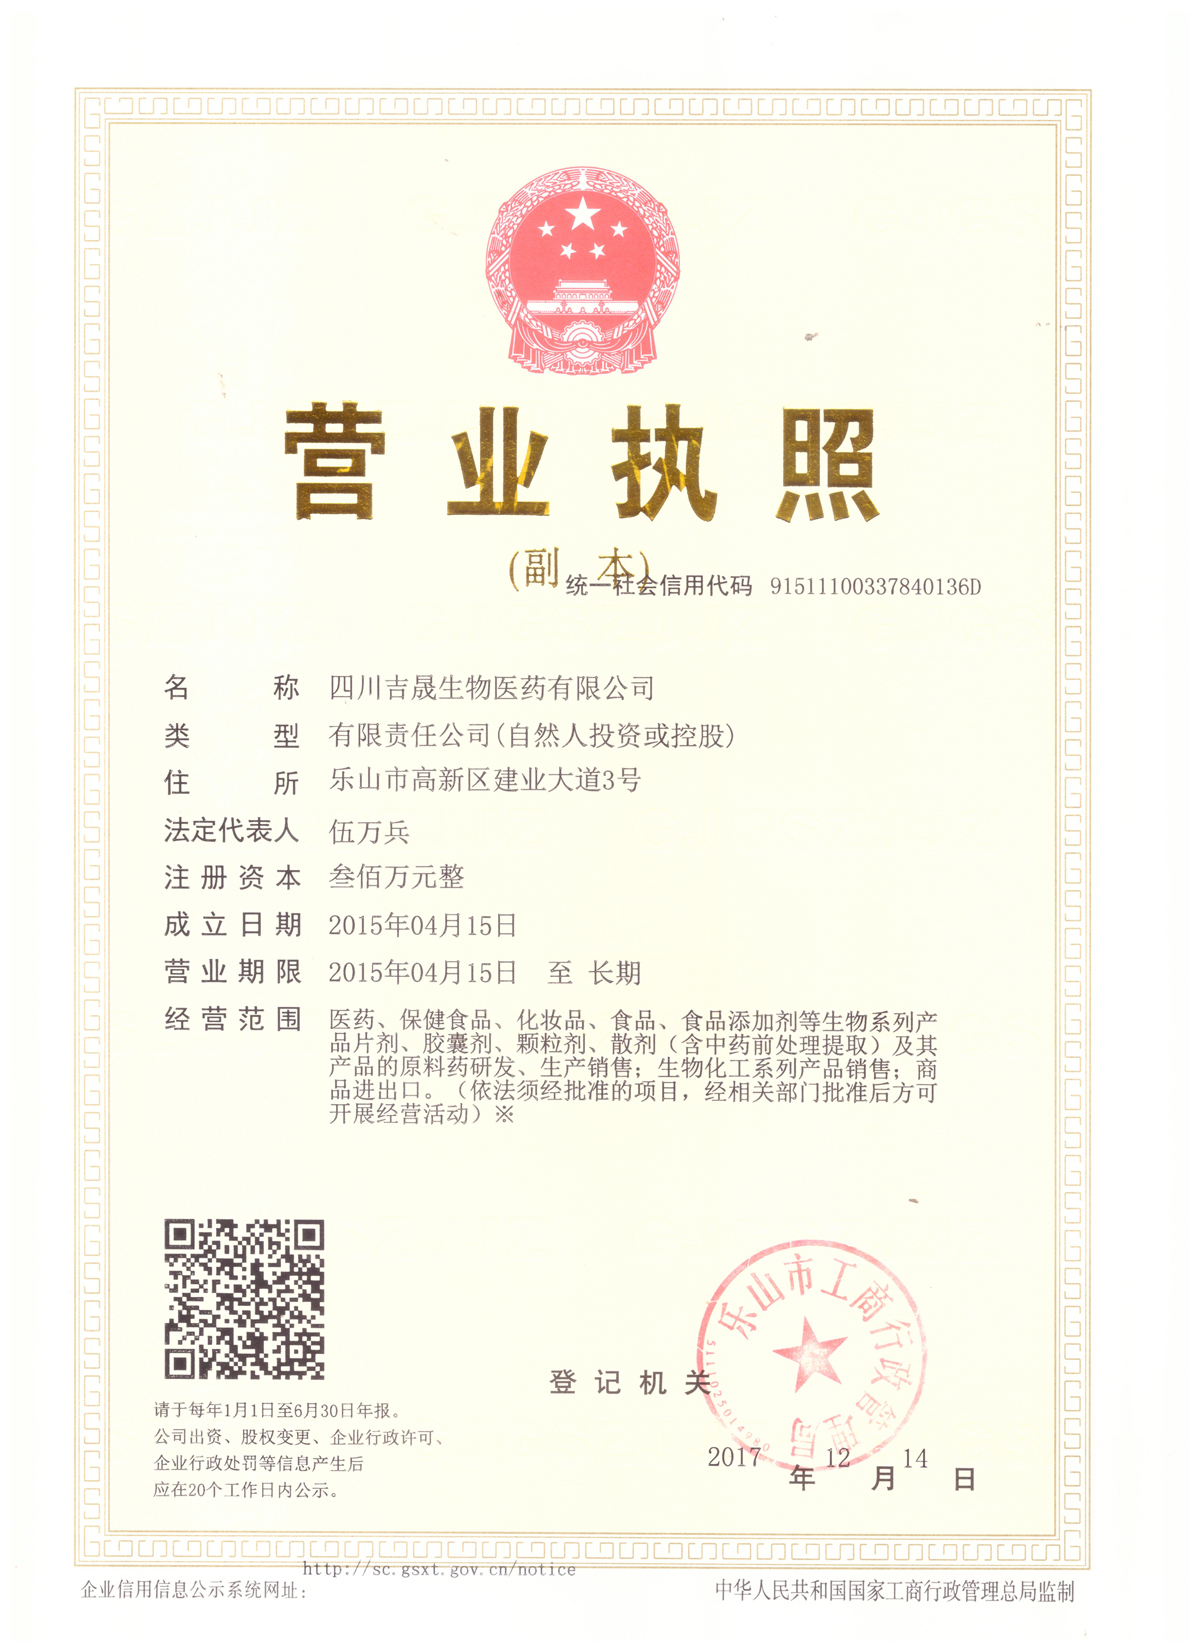 Sichuan Jisheng Biopharmaceutical Co., LTD